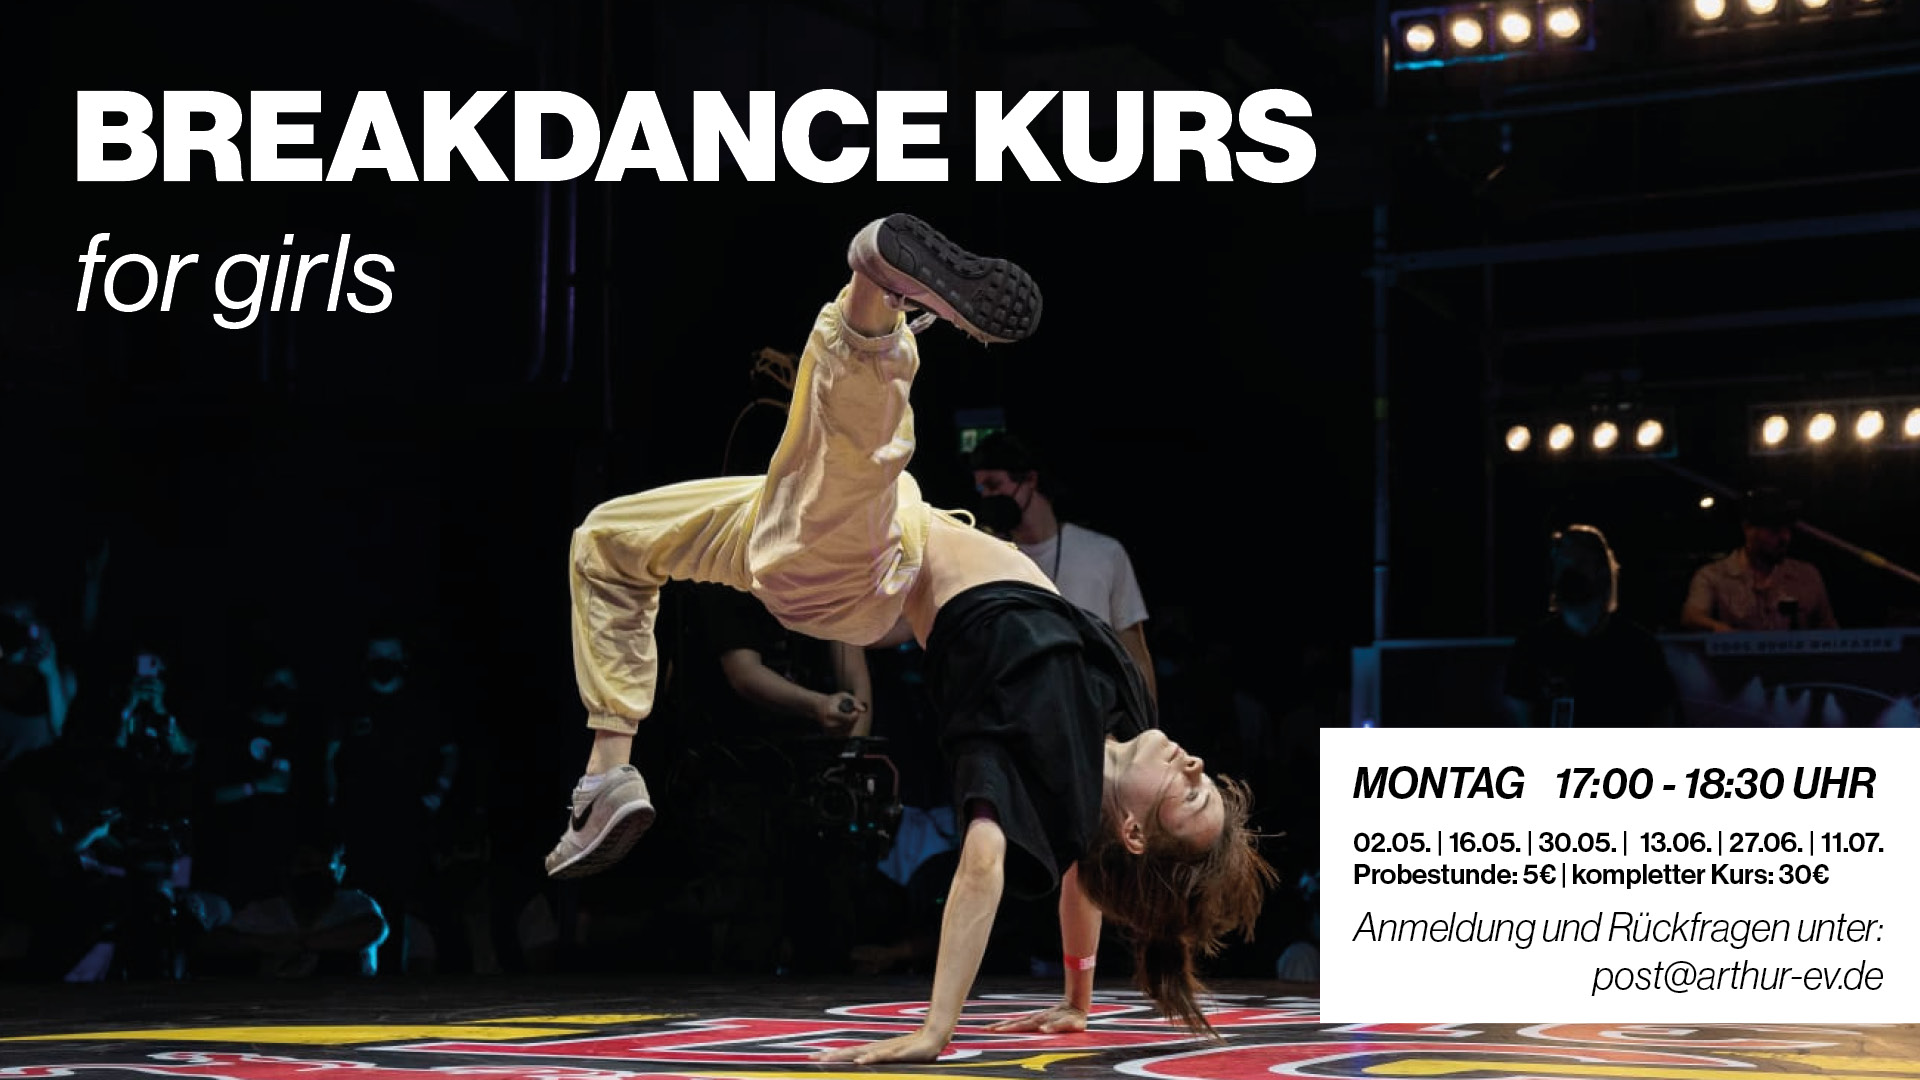 Breakdance Kurs for girls - 01